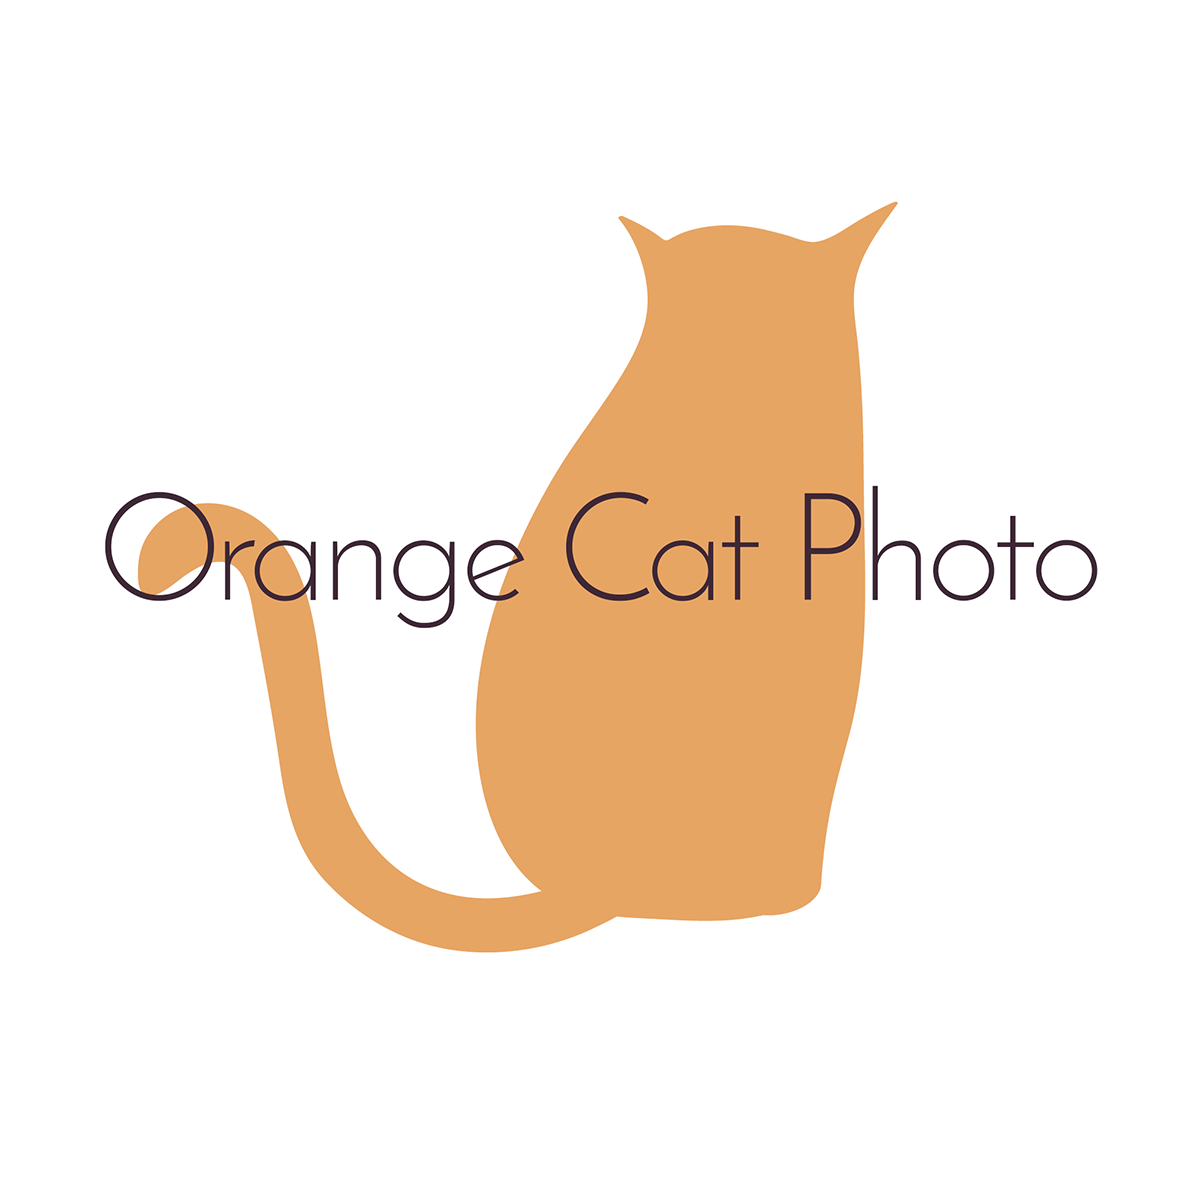 Orange Cat Photo | Wedding Photography